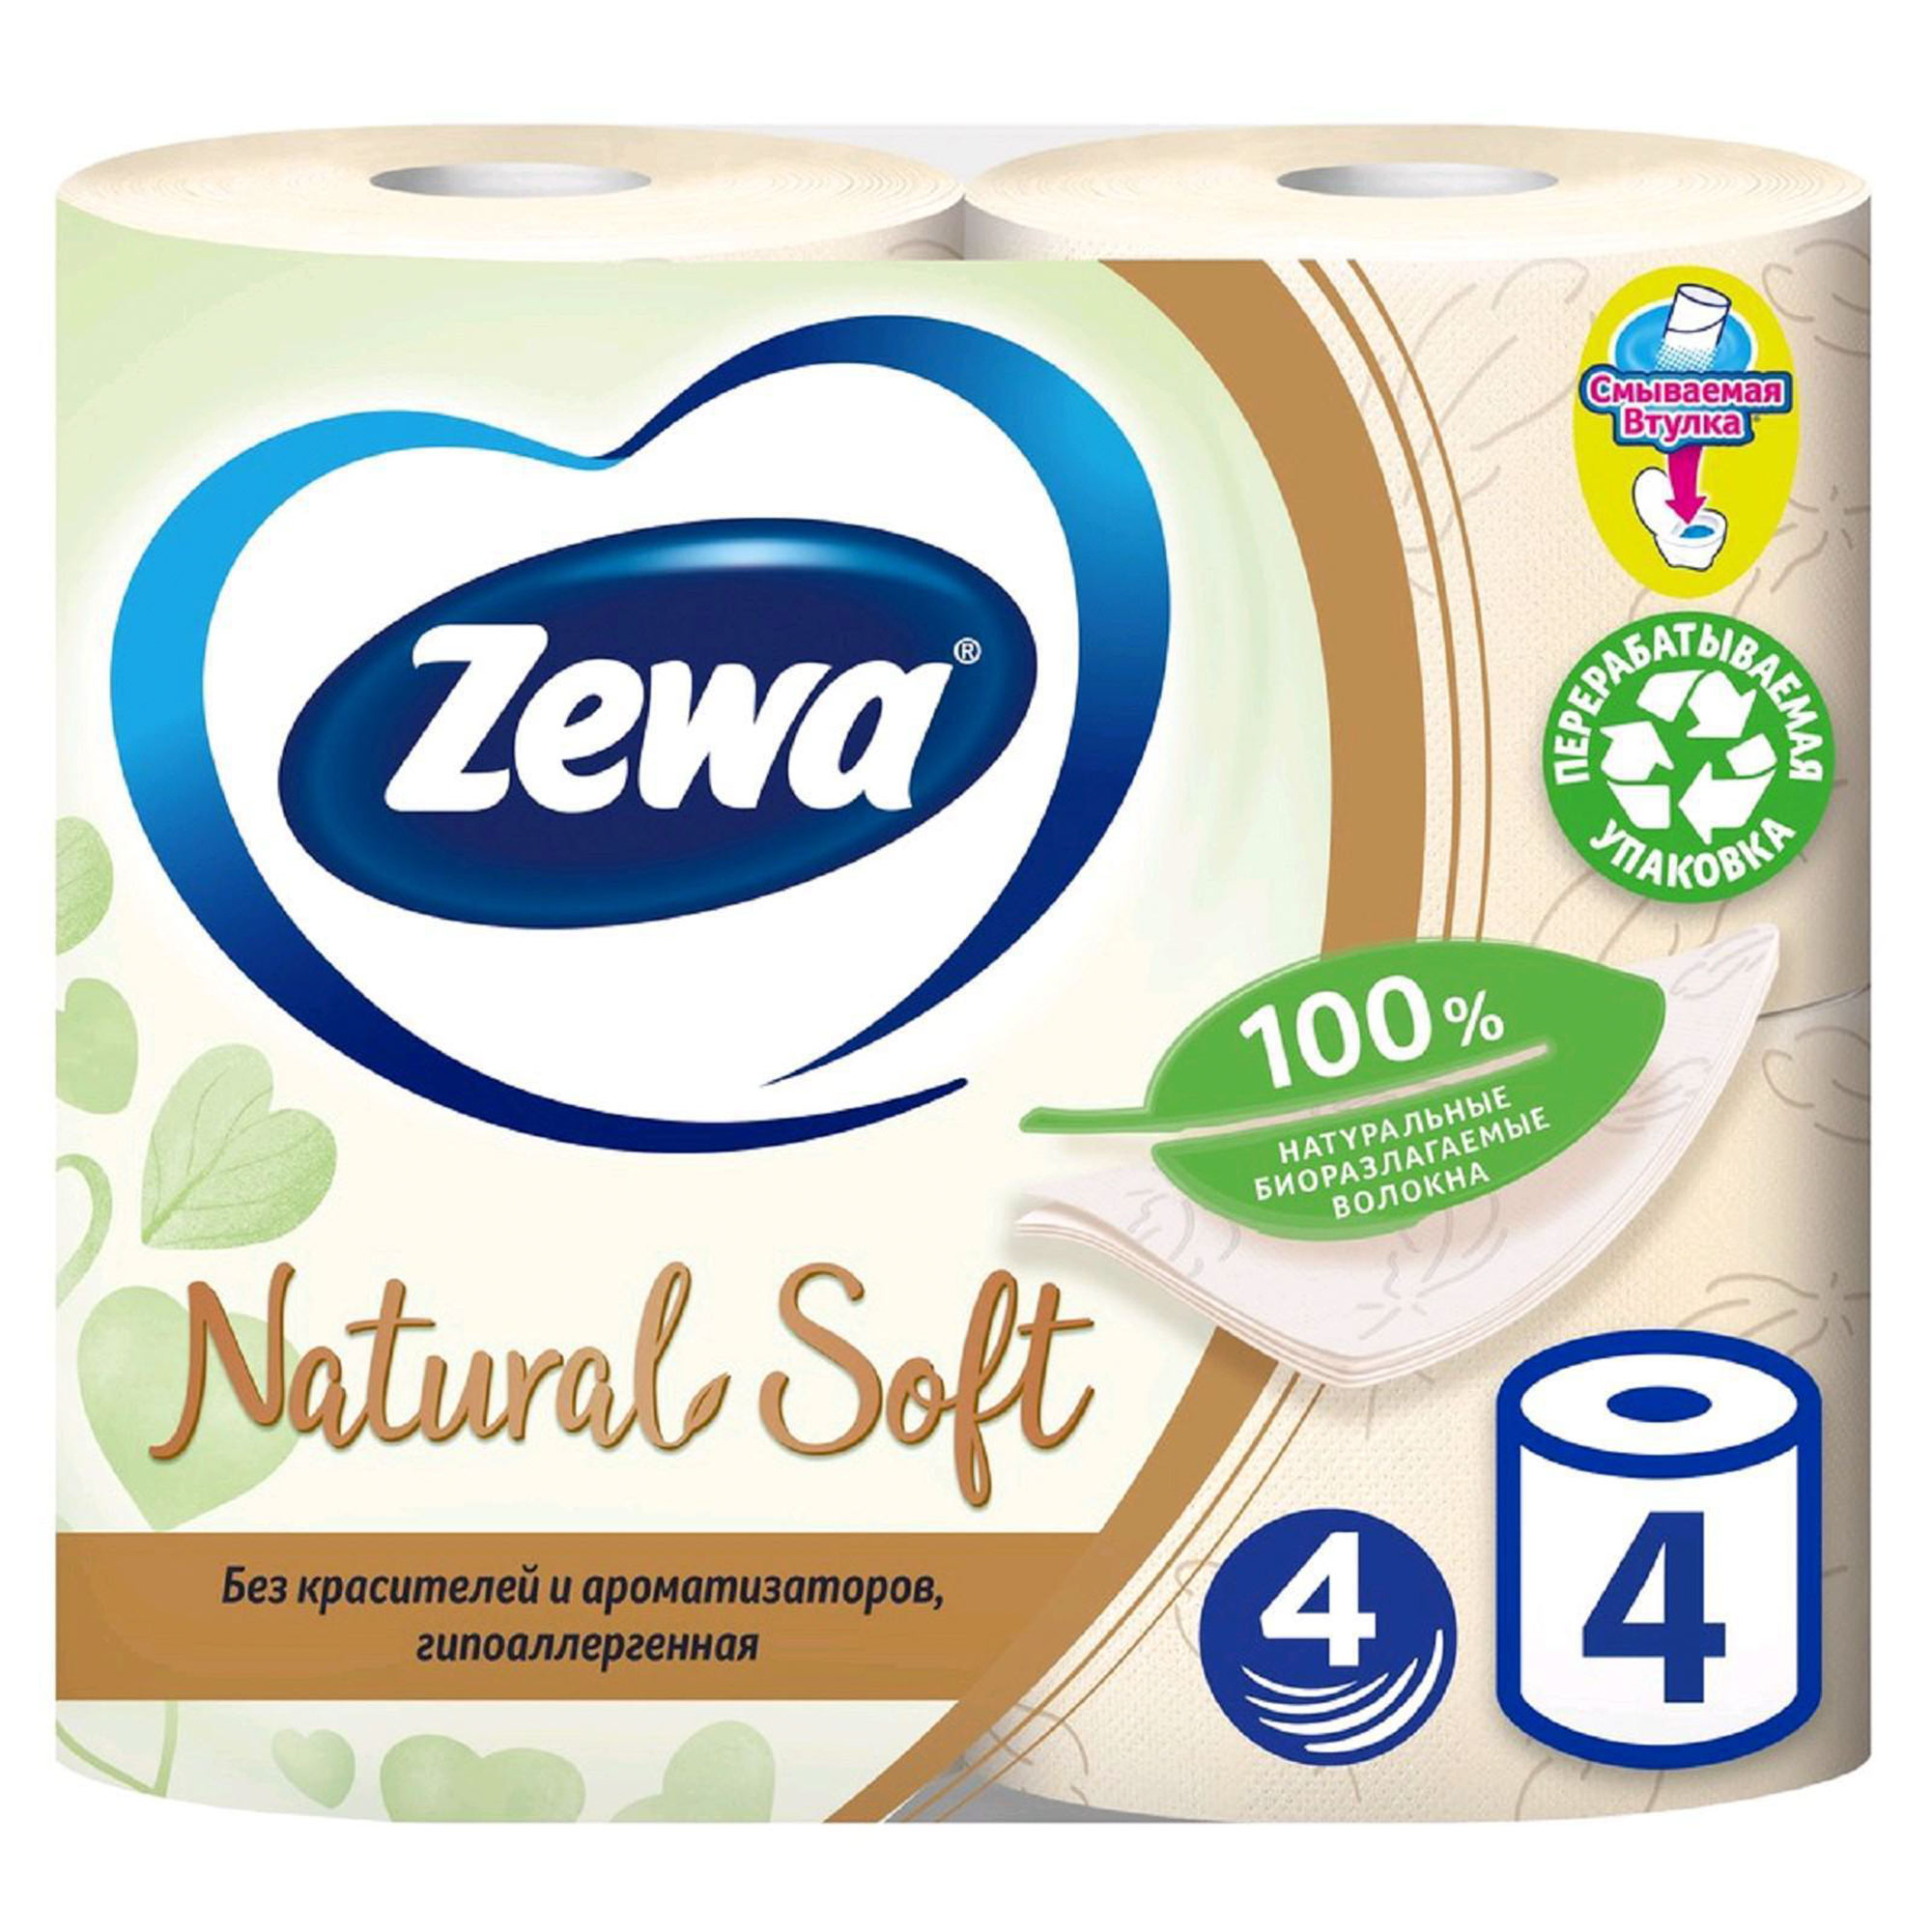 Туалетная бумага Zewa Natural Soft четырехслойная 4 шт туалетная бумага zewa плюс яблоко 8шт